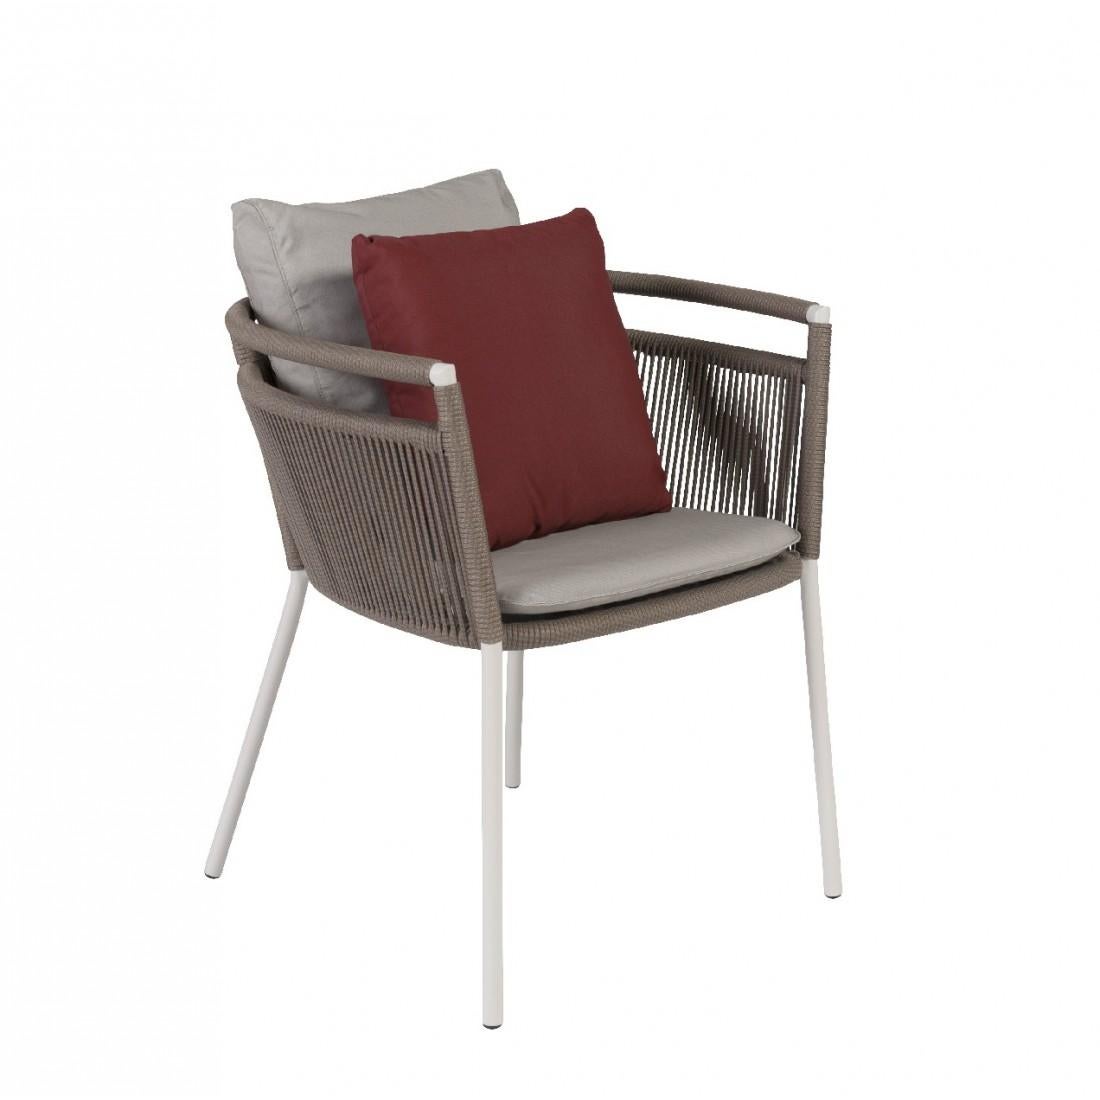 Set aus sechs Design-Stühlen für den Außenbereich mit lackiertem Metallgestell und Seilgeflecht. Robustheit und Leichtigkeit, hohe Qualität, widerstandsfähig und weich im Griff, so poetisch, so luftig und design.